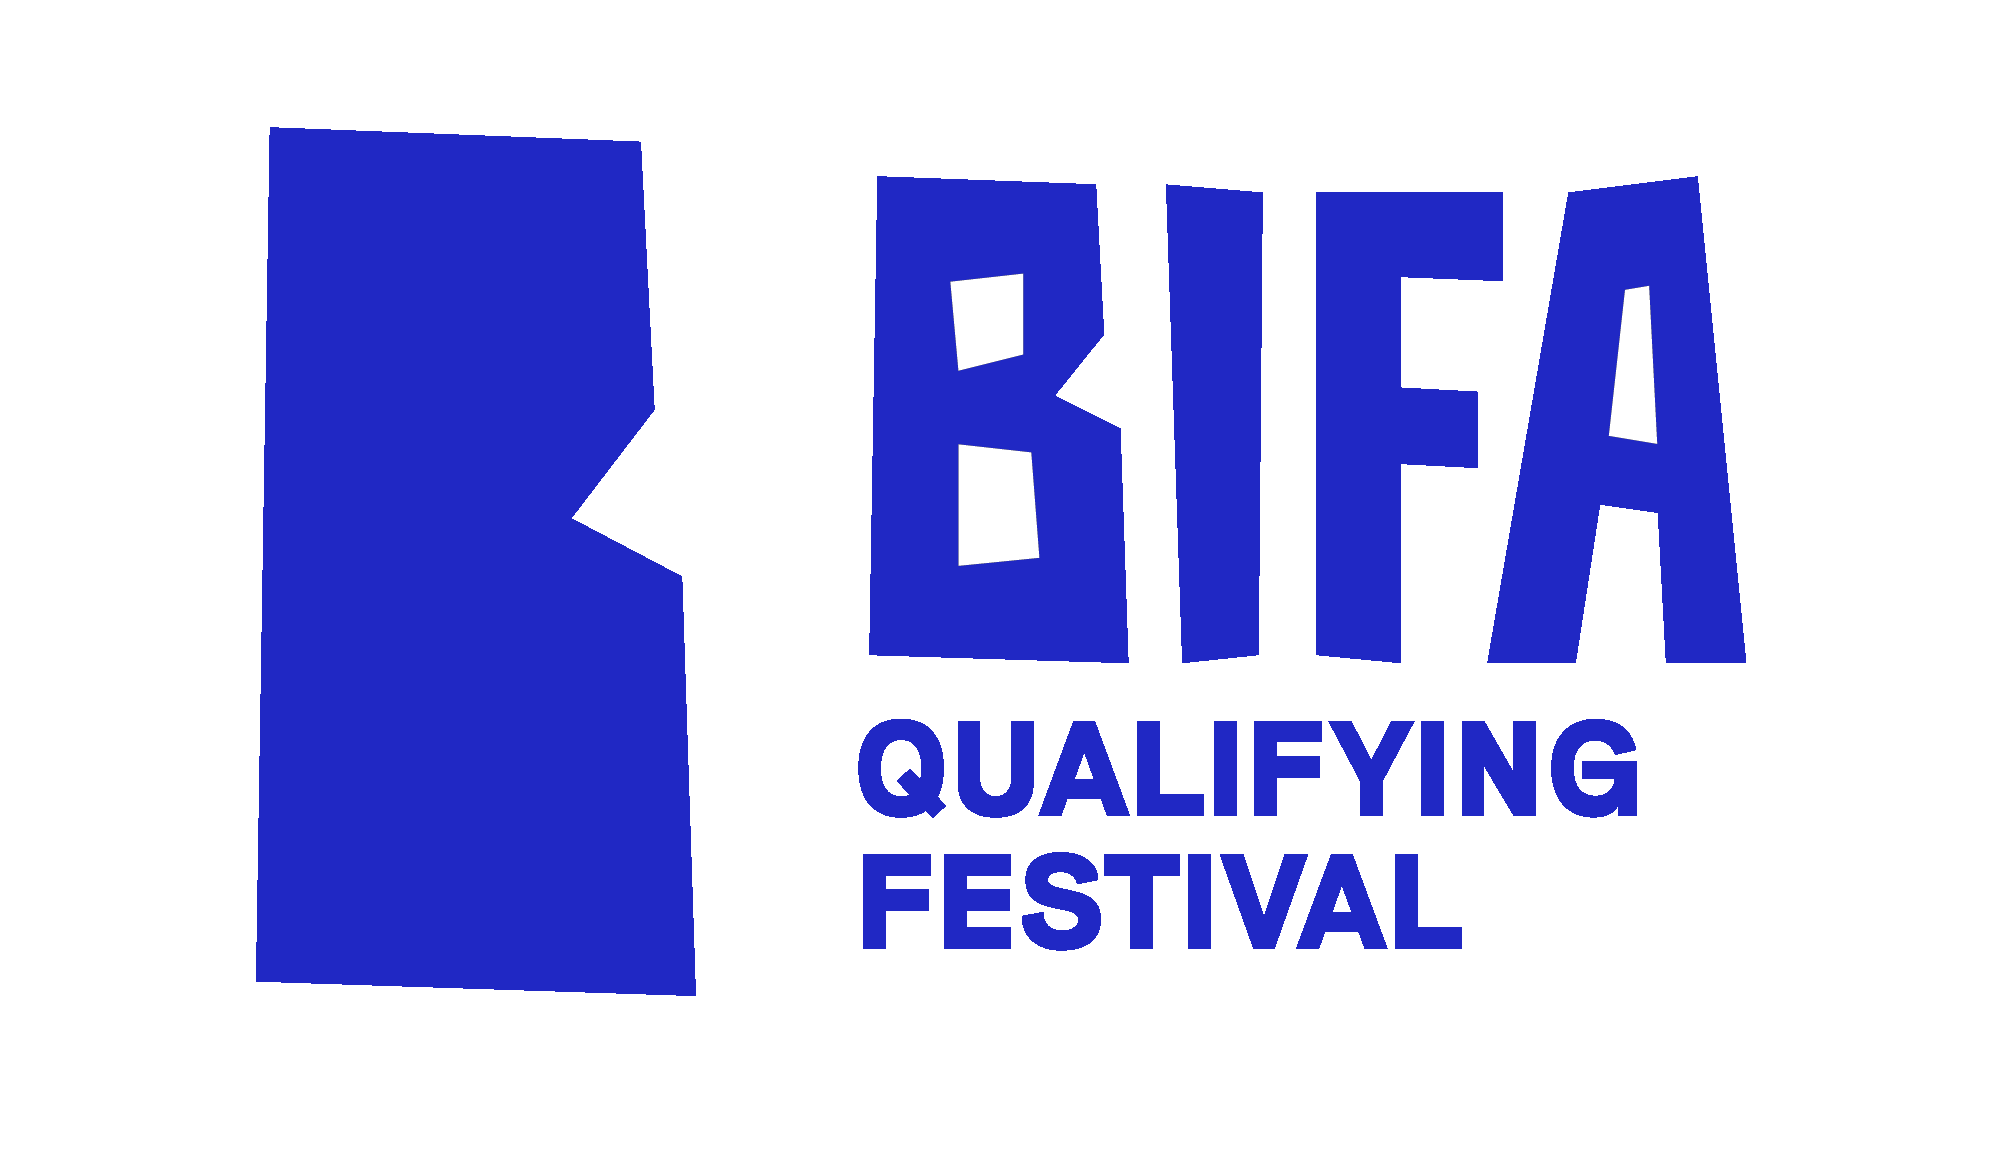 BIFA-Festival-RGB-Blue